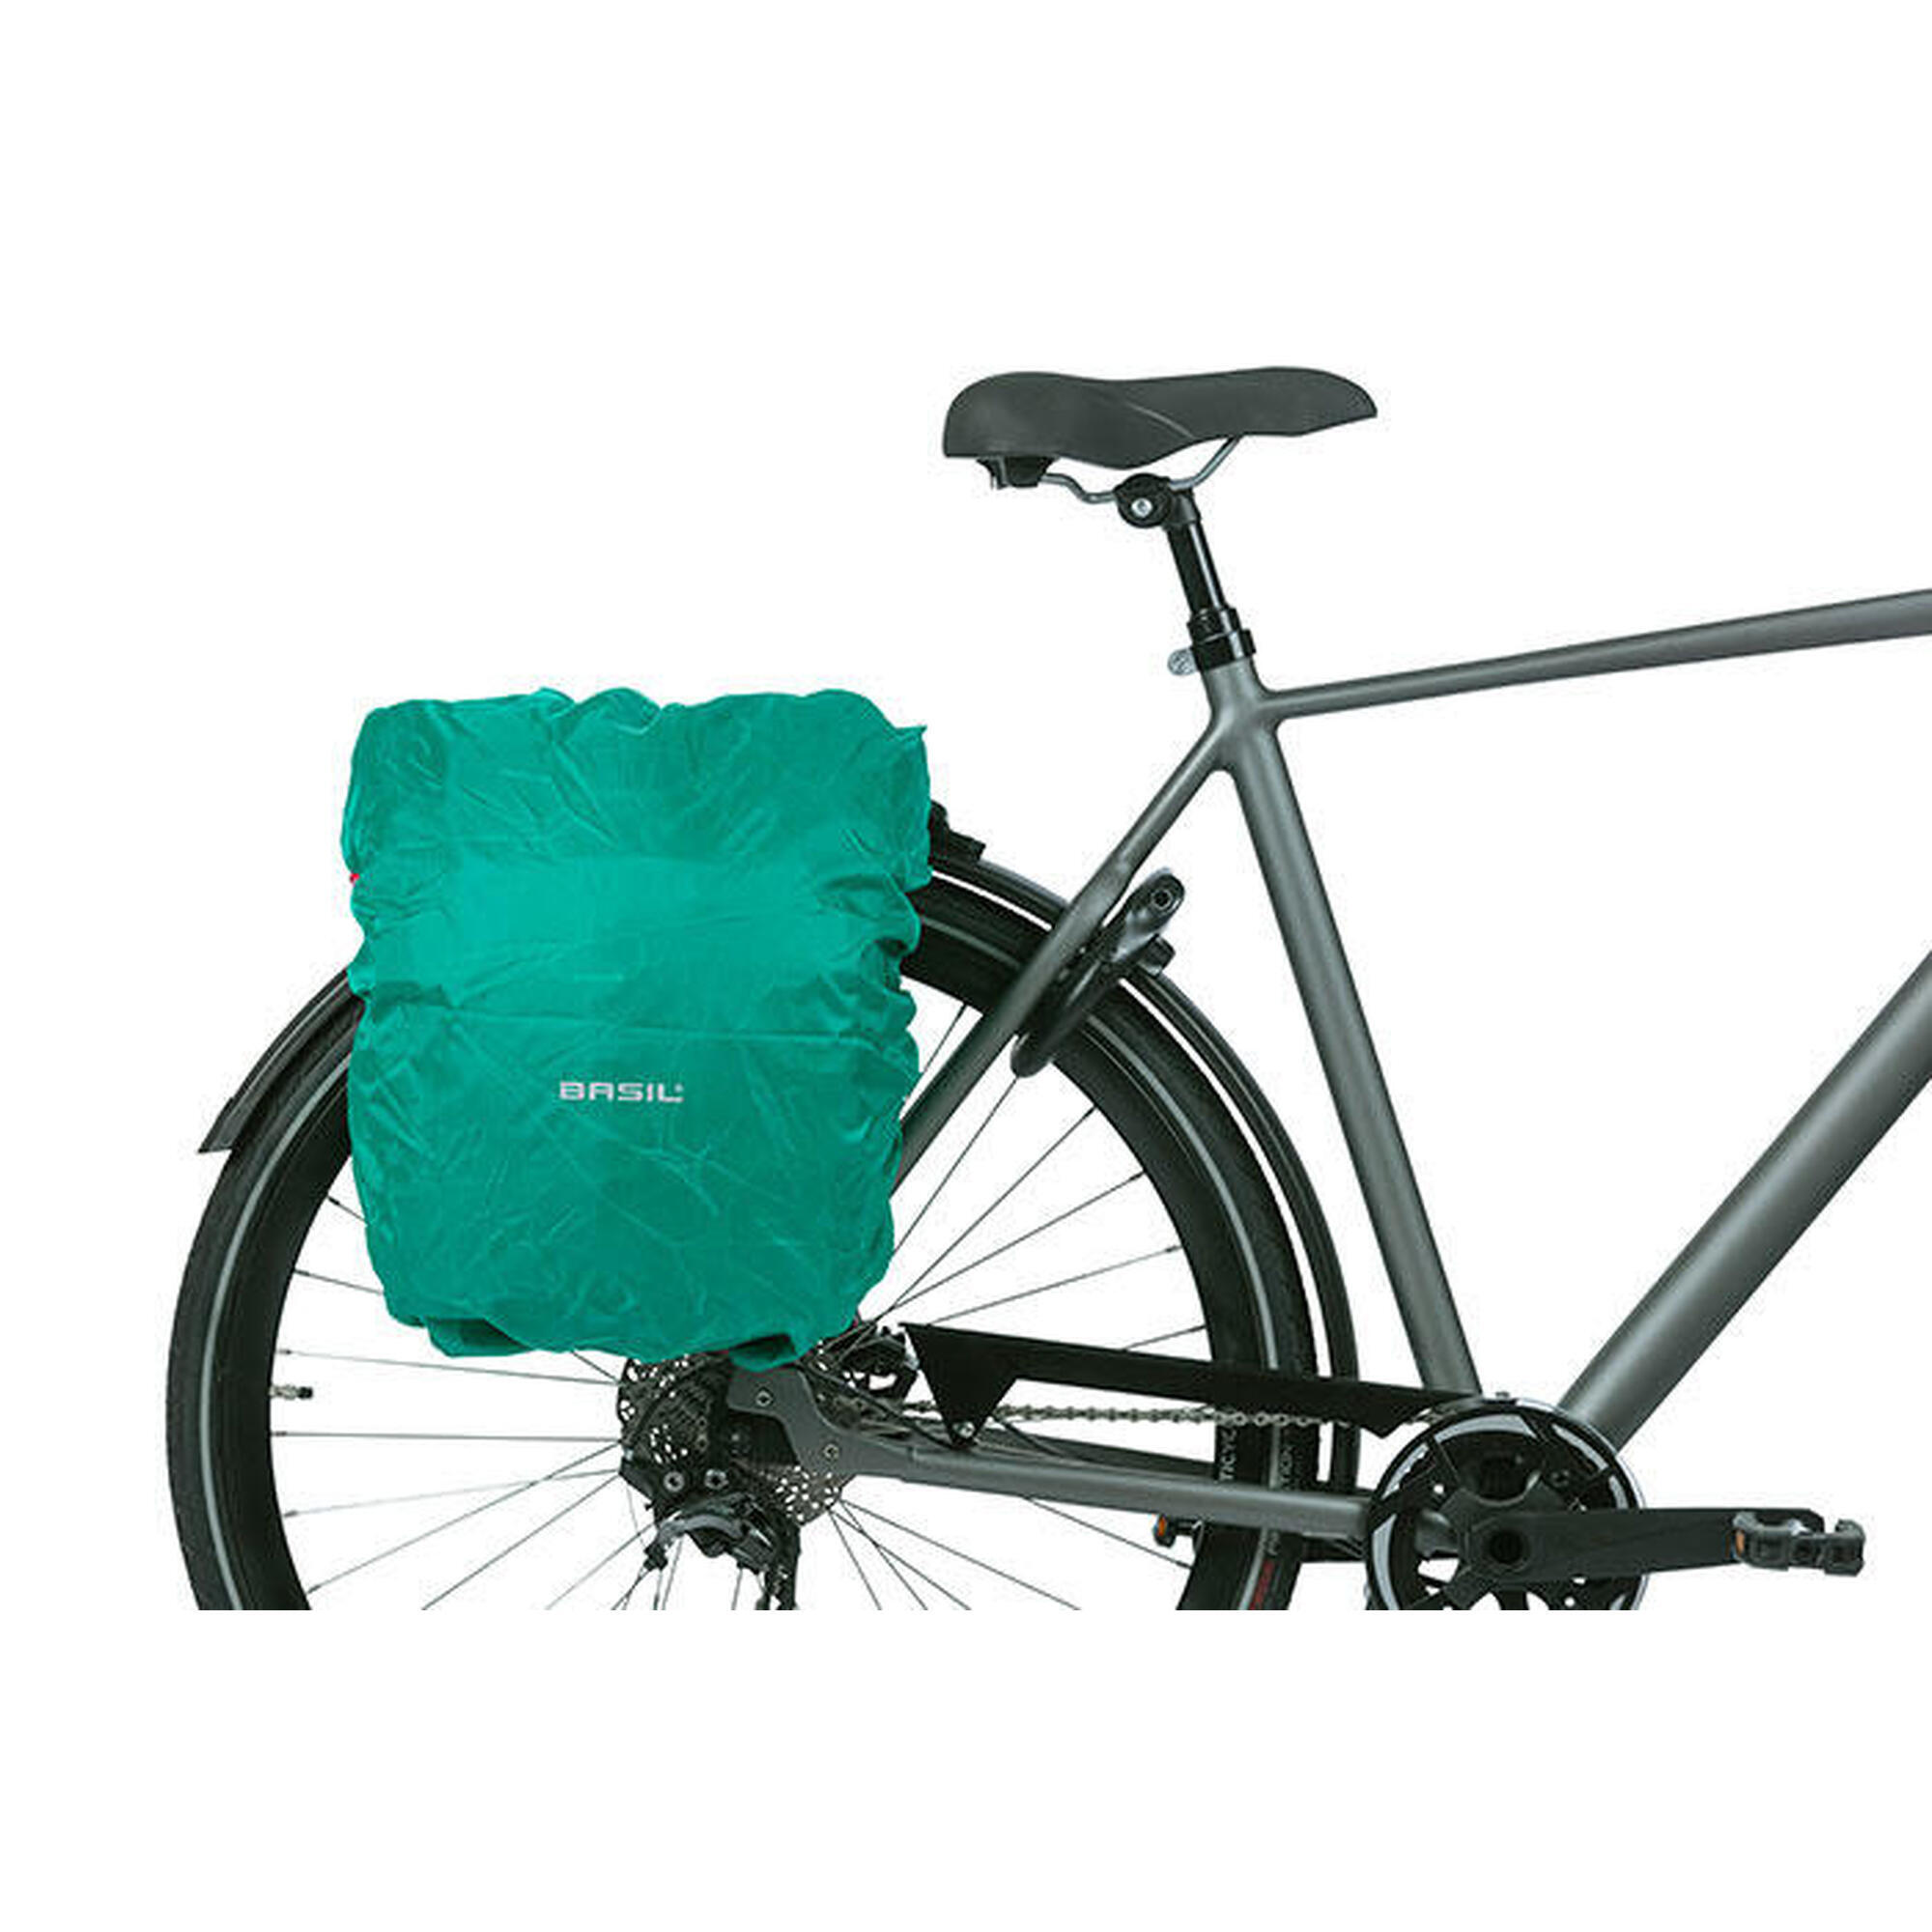 Bolsa de poliéster impermeable para bicicletas con reflectores Basil 365d l hook